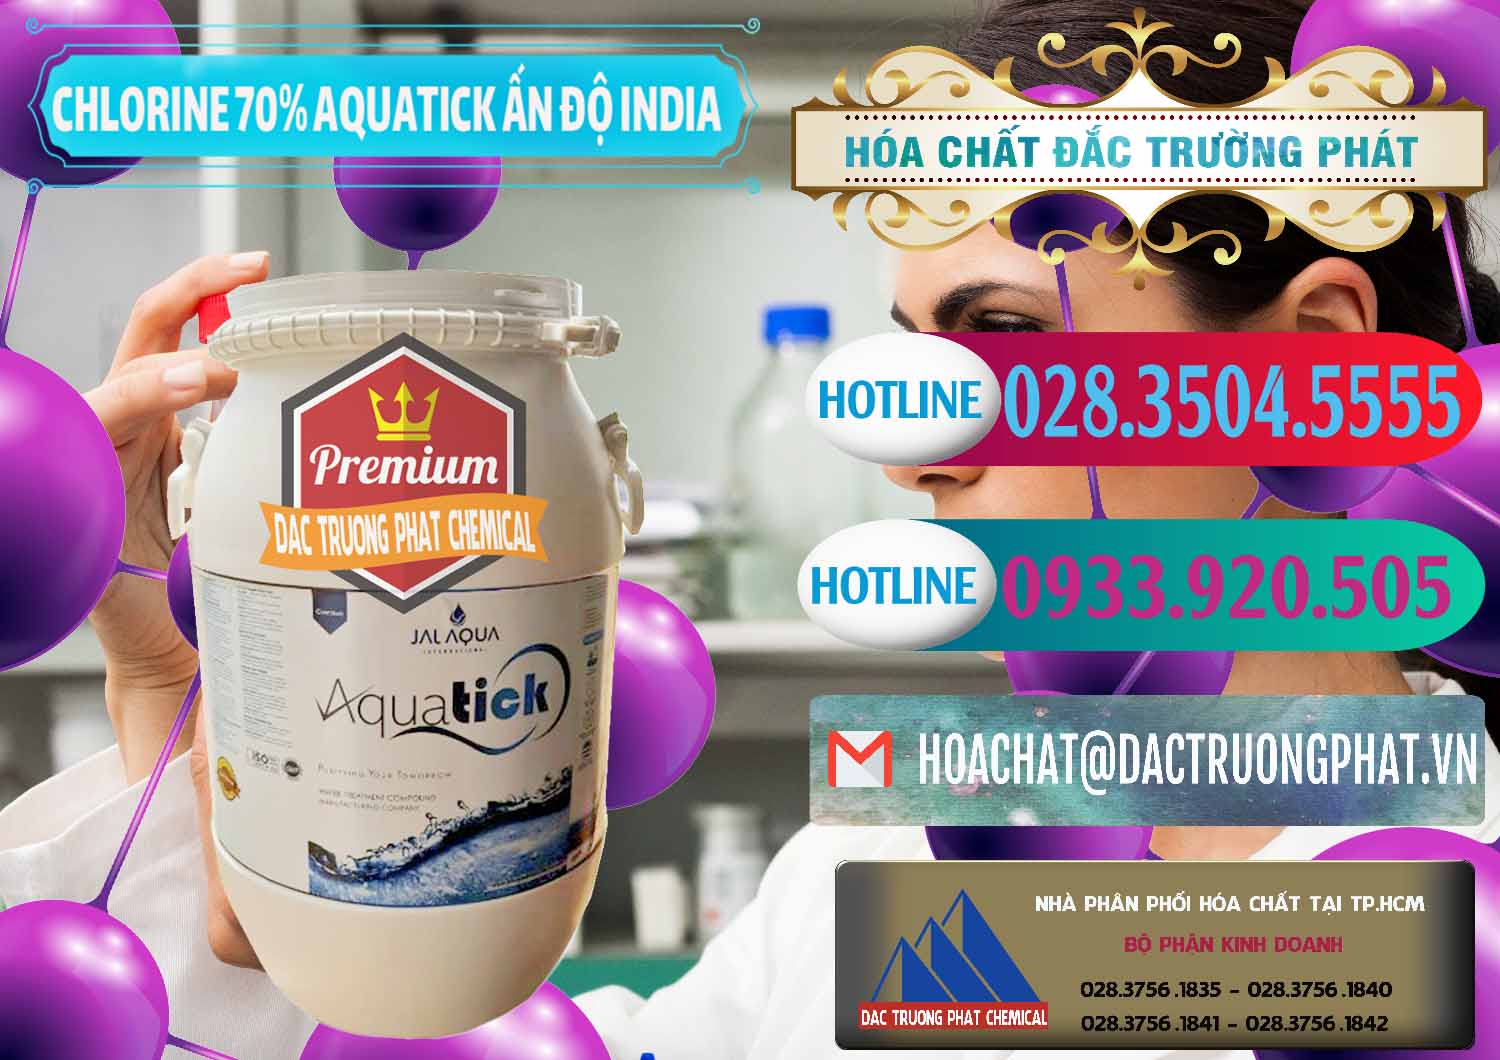 Cty nhập khẩu ( bán ) Chlorine – Clorin 70% Aquatick Jal Aqua Ấn Độ India - 0215 - Cty chuyên bán ( cung cấp ) hóa chất tại TP.HCM - truongphat.vn